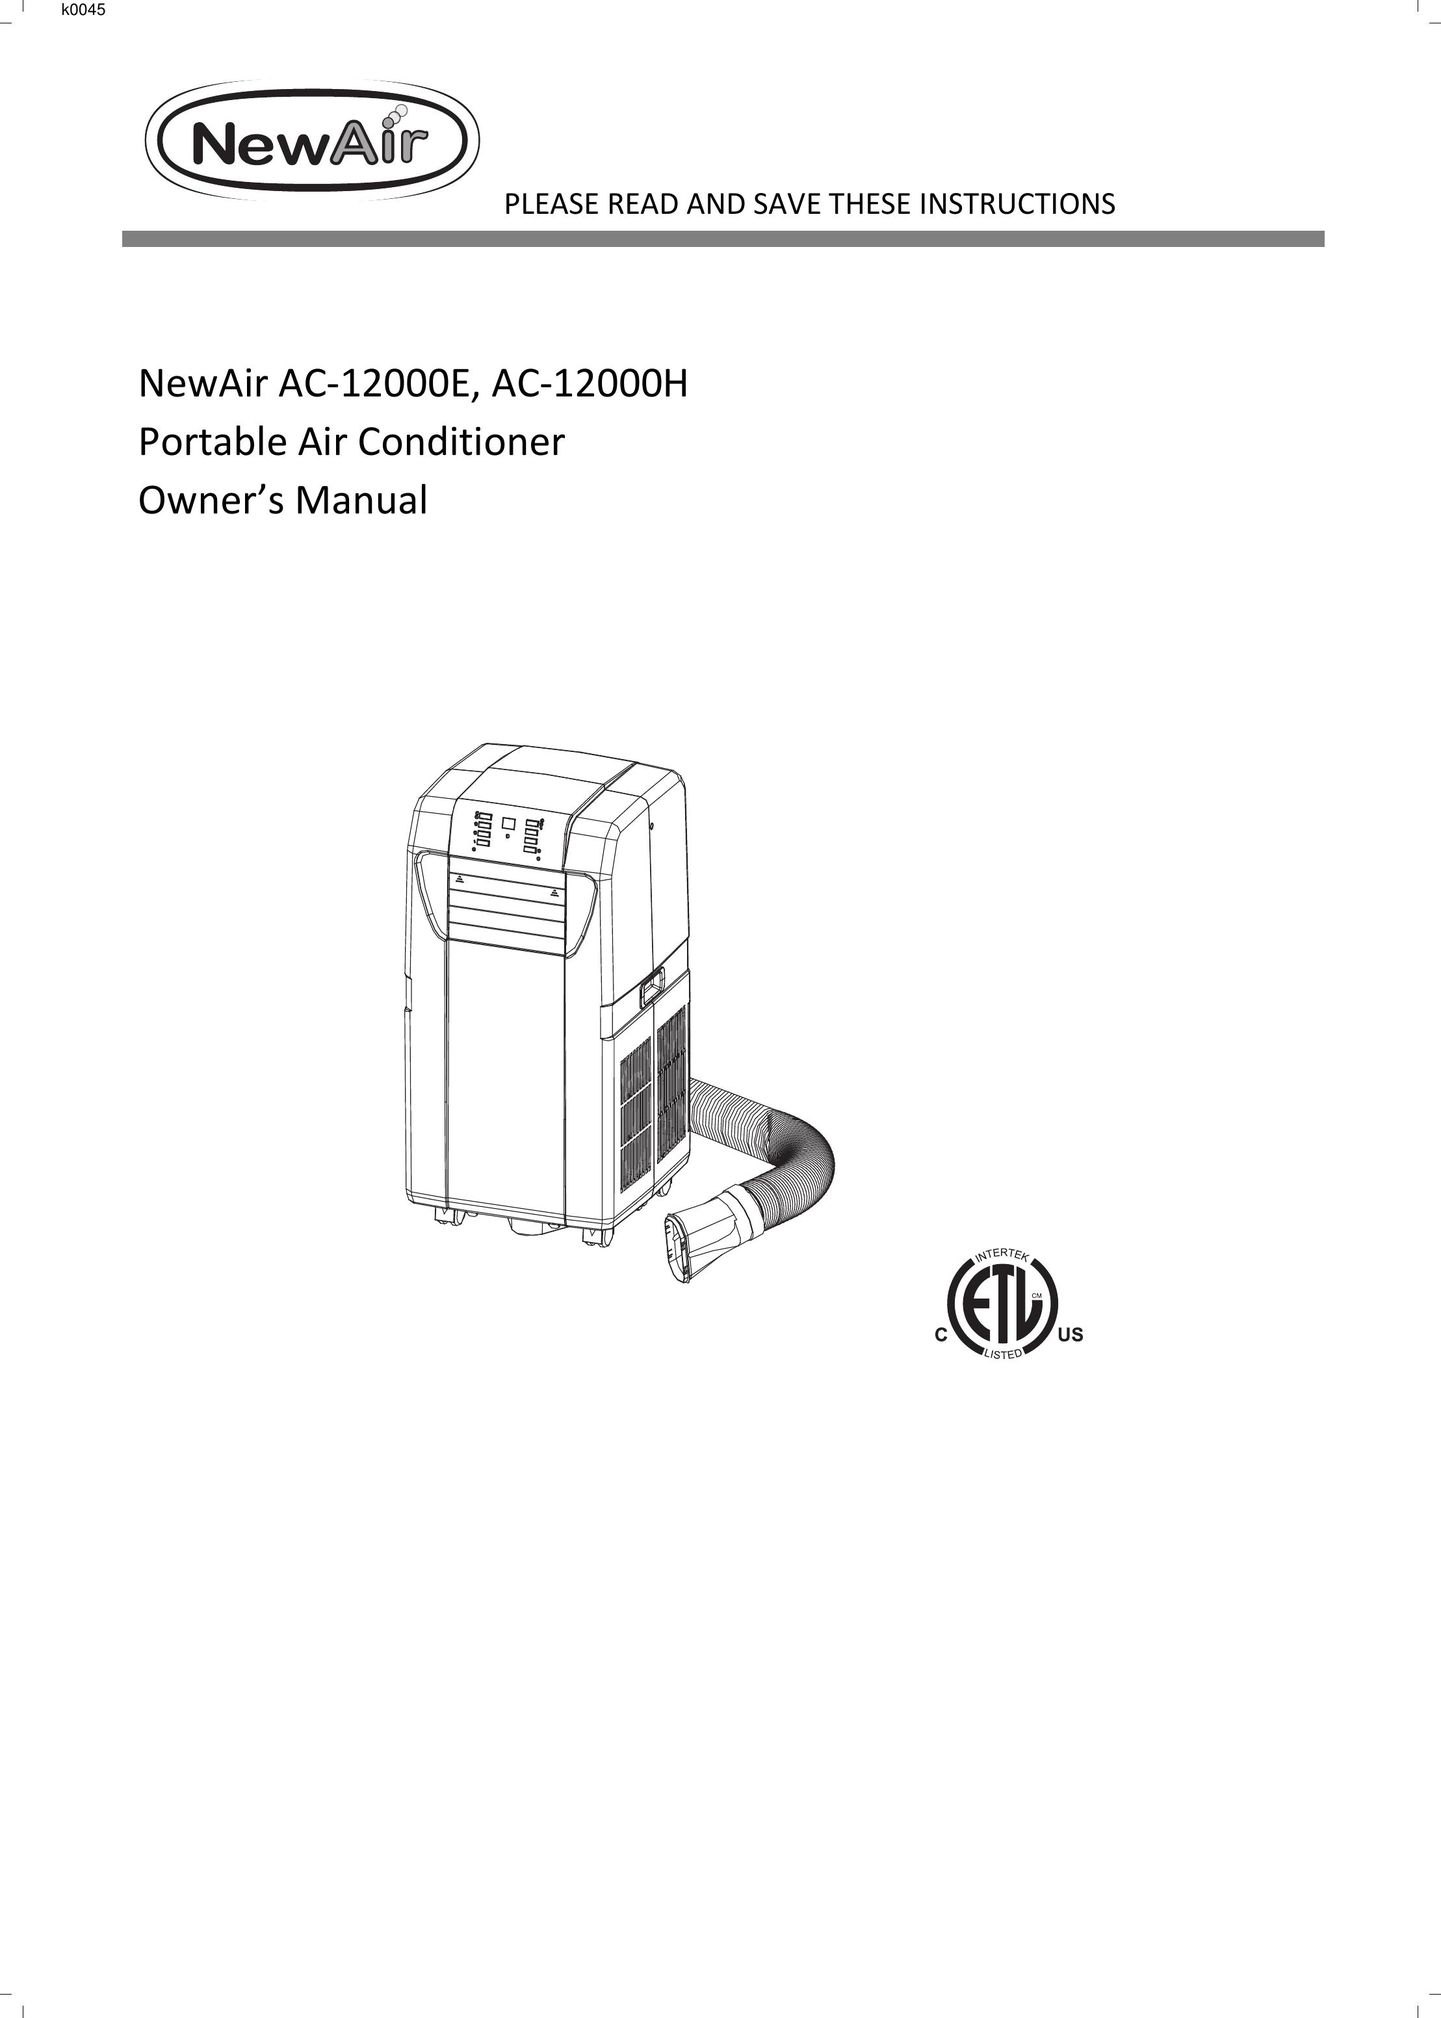 NewAir AC12000E Air Conditioner User Manual